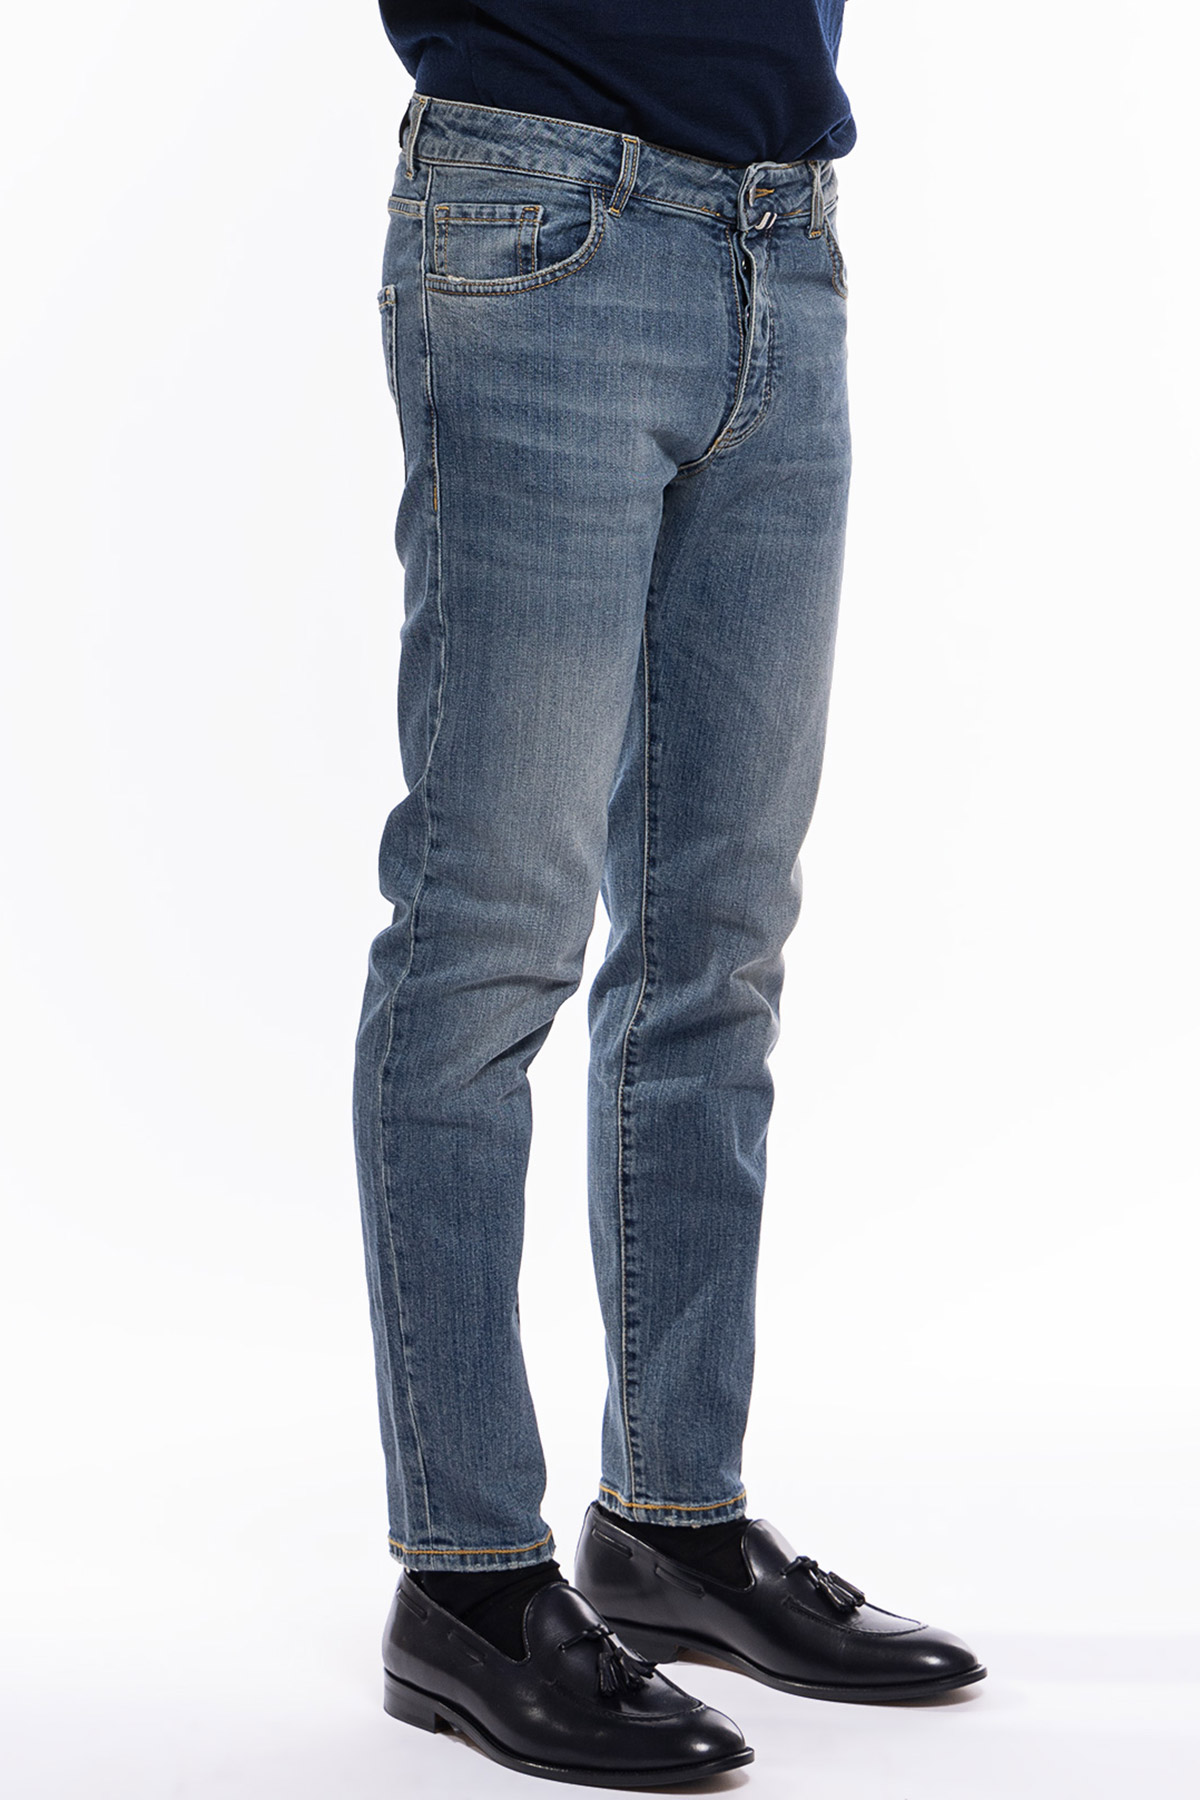 Jeans da uomo con sfumature beige modello 5 tasche slim fit made in italy